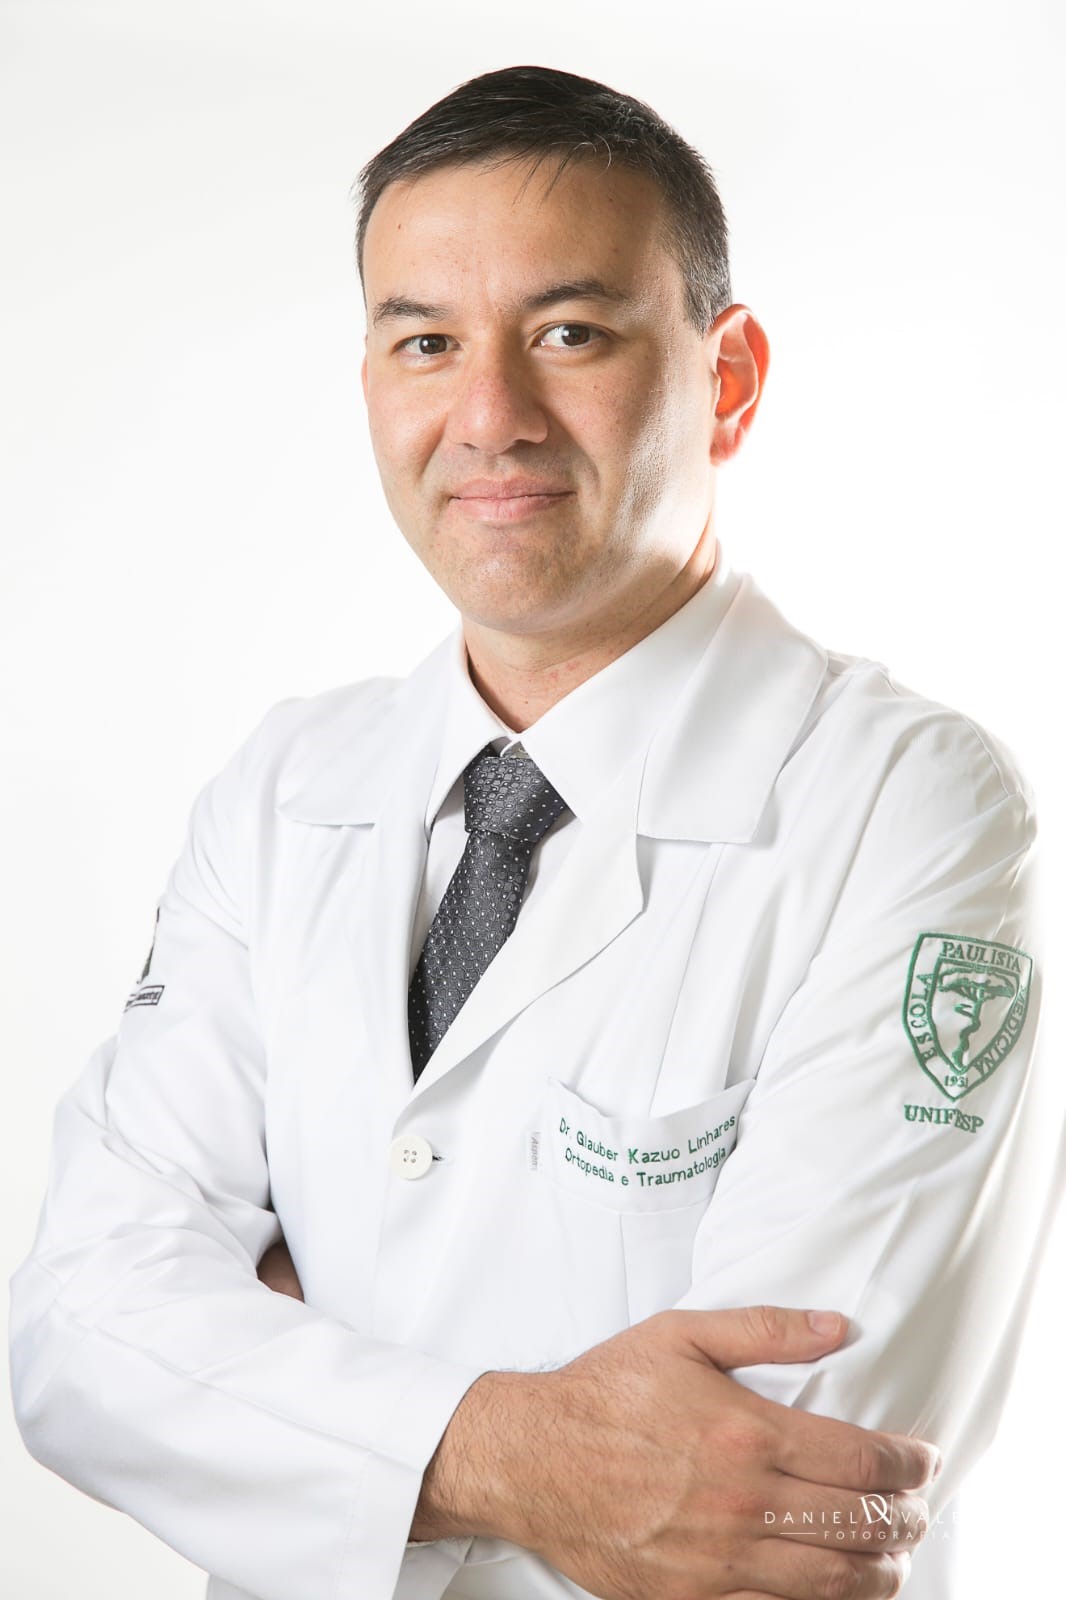 Dr. Glauber Kazuo Linhares